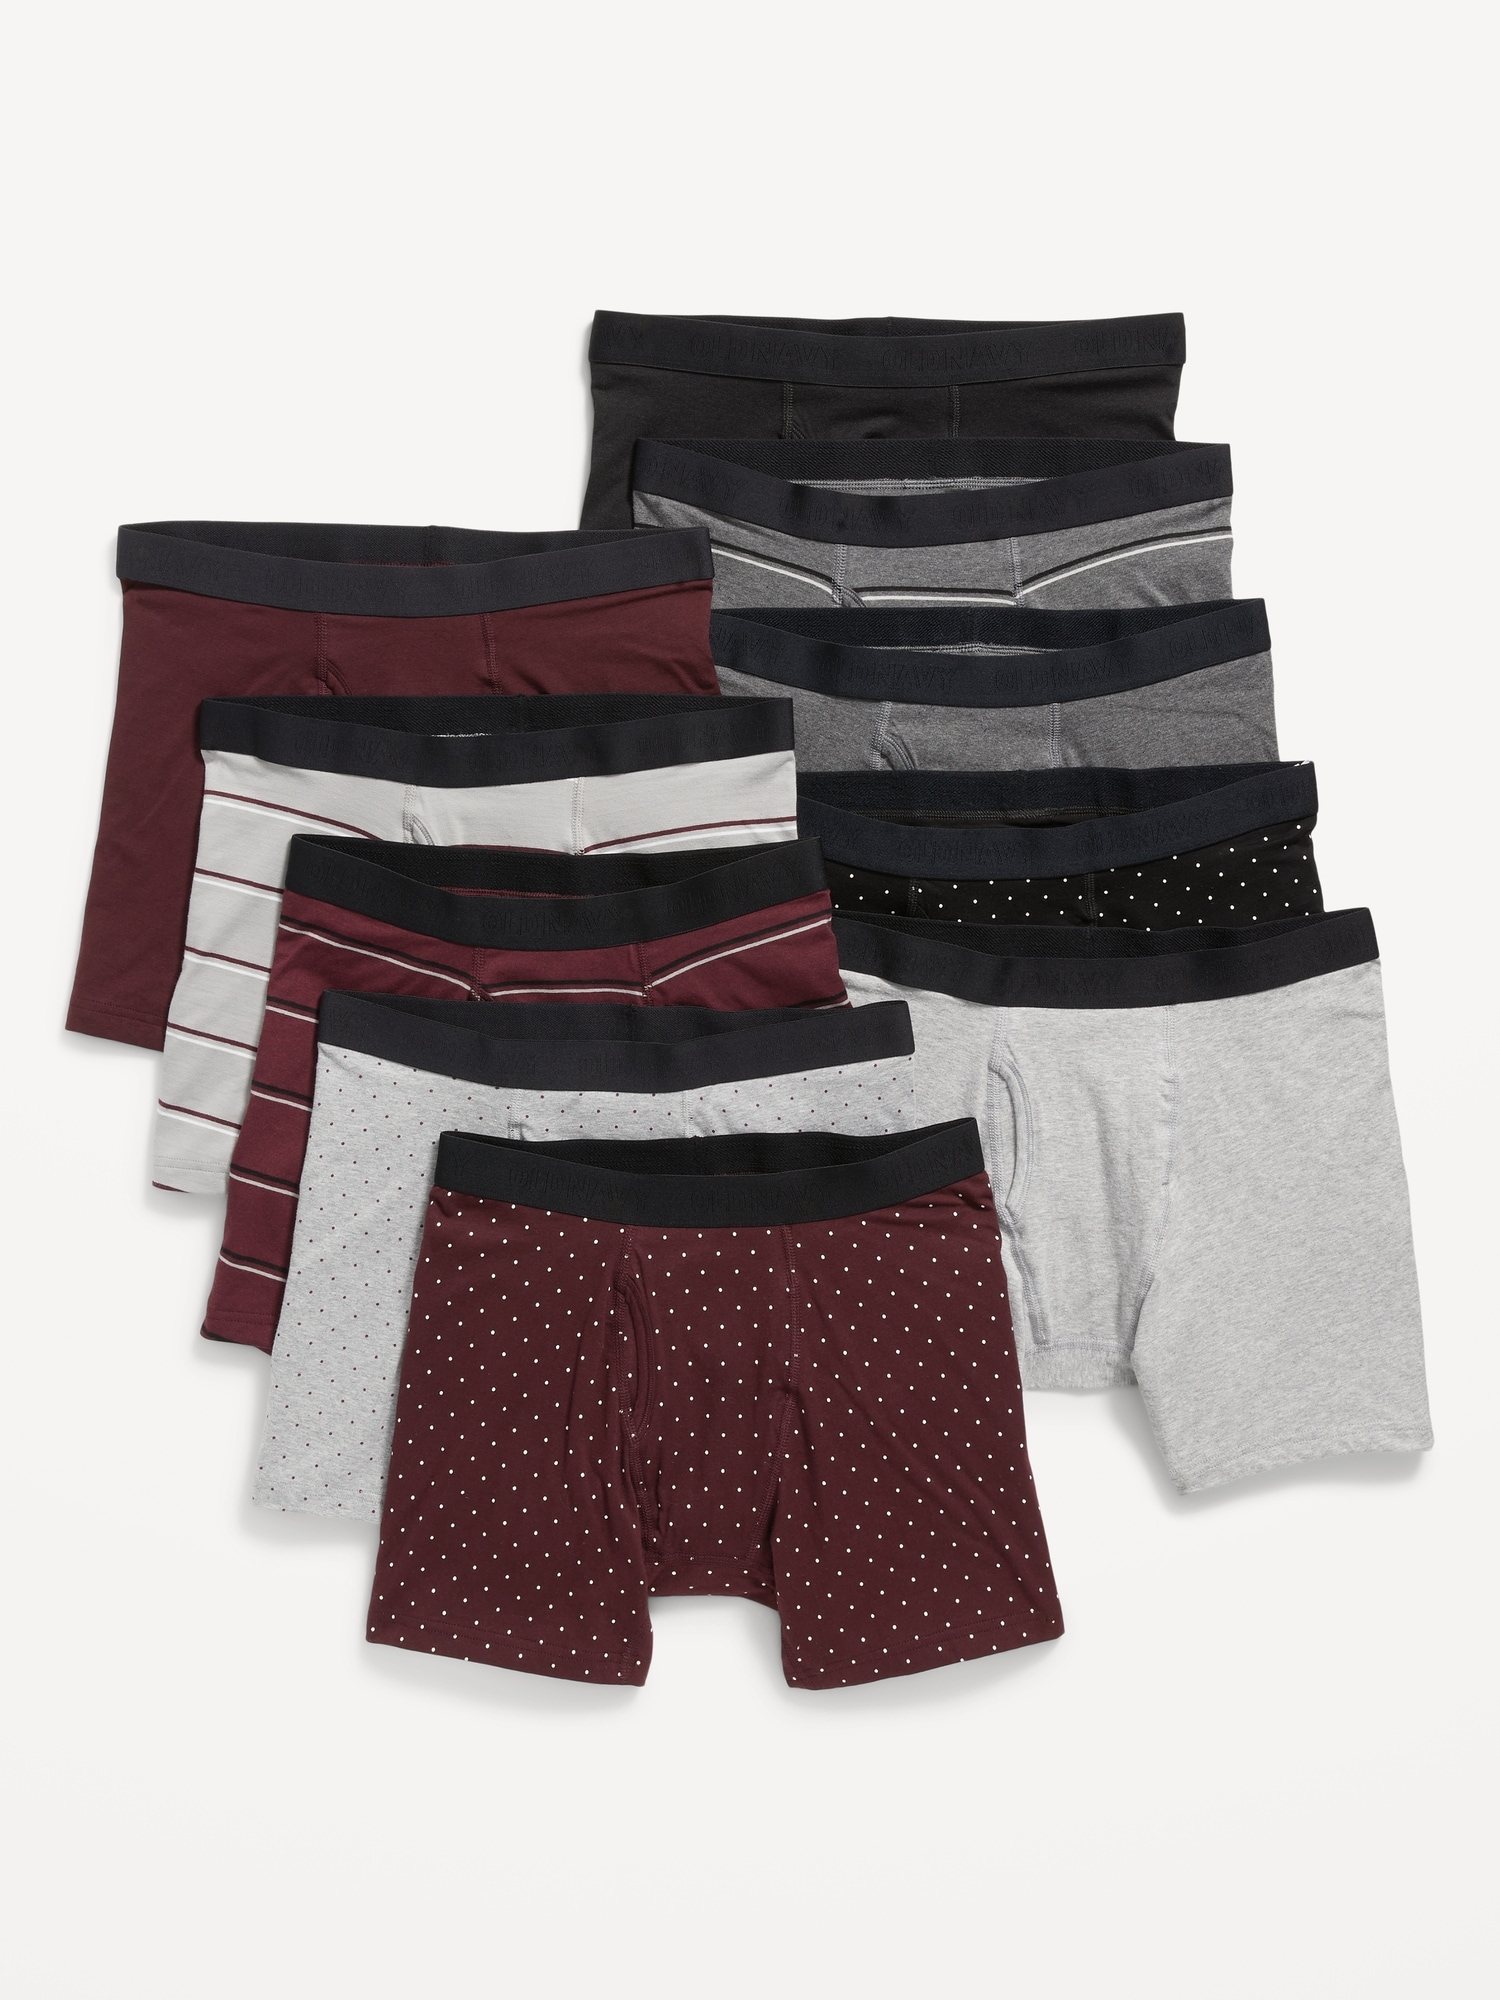 Men's Trunk Underwear 10 Pack